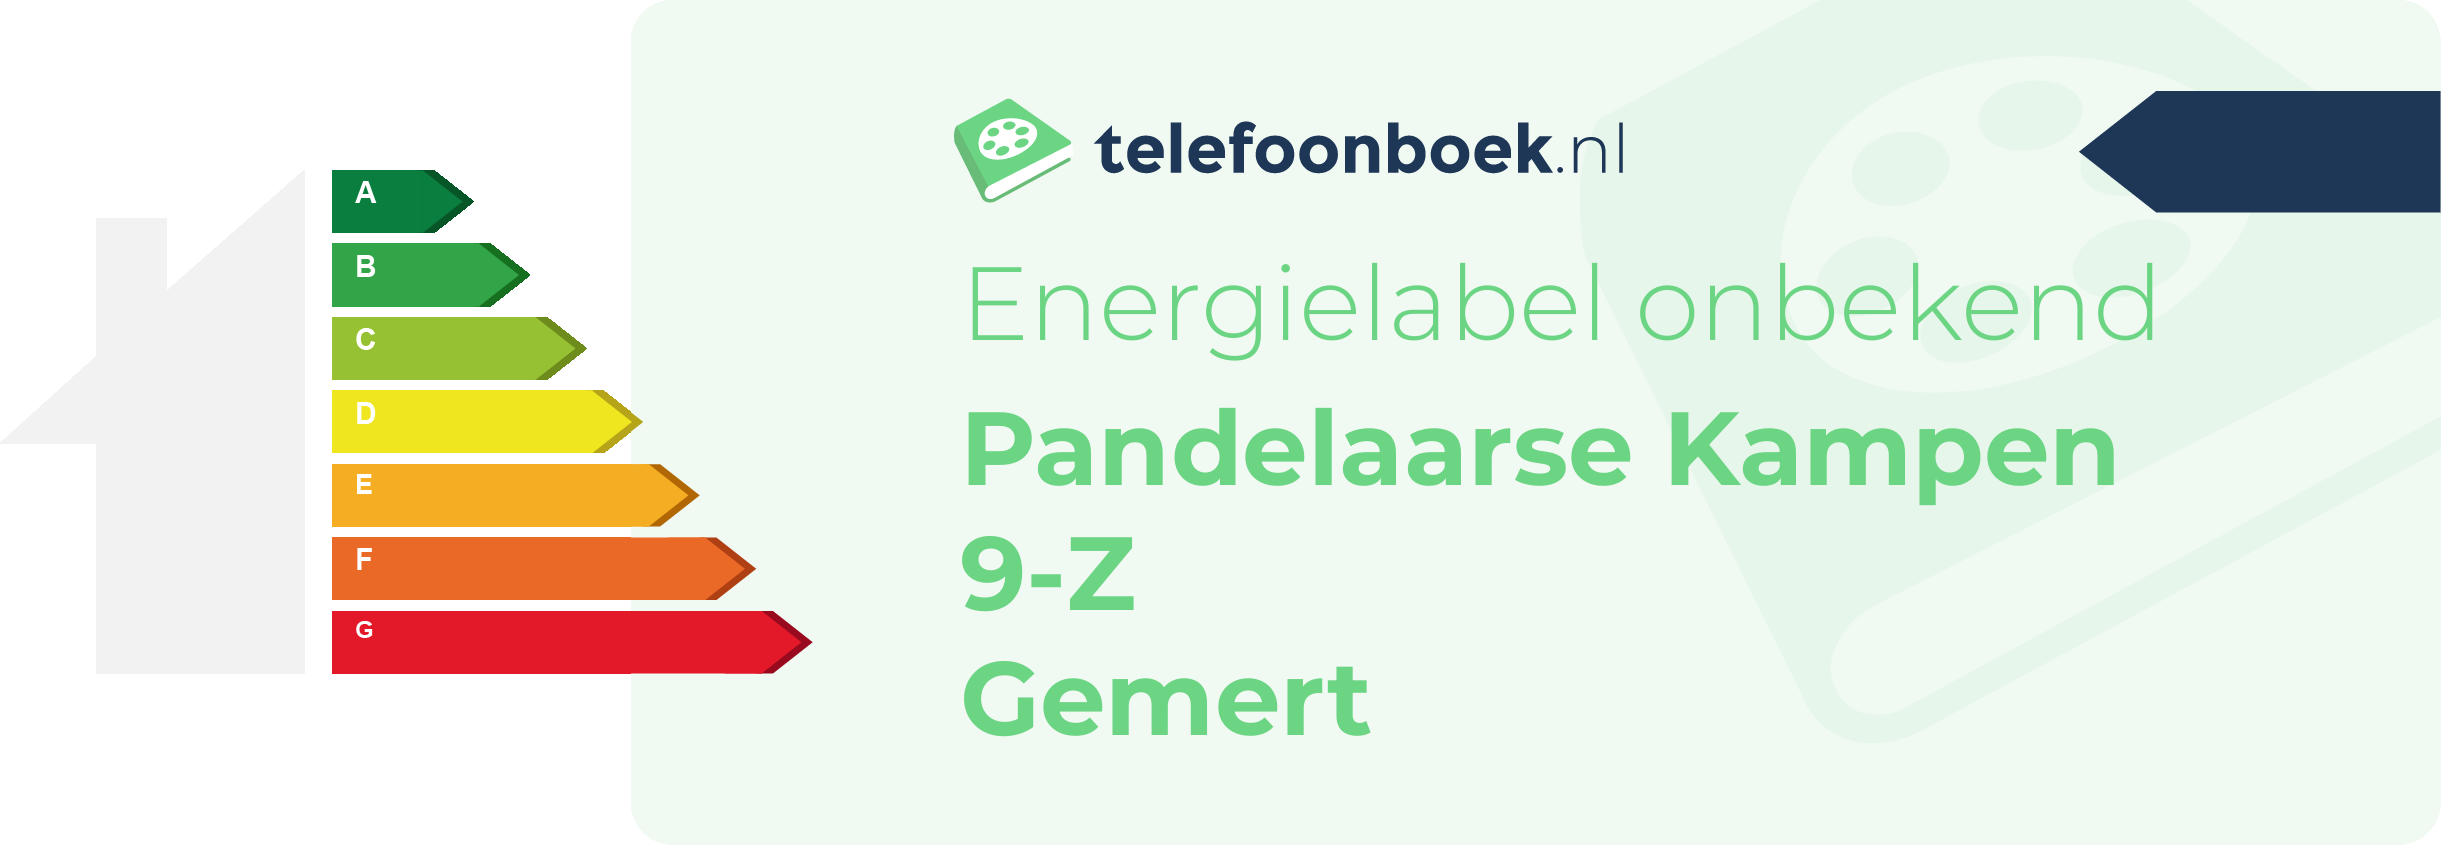 Energielabel Pandelaarse Kampen 9-Z Gemert